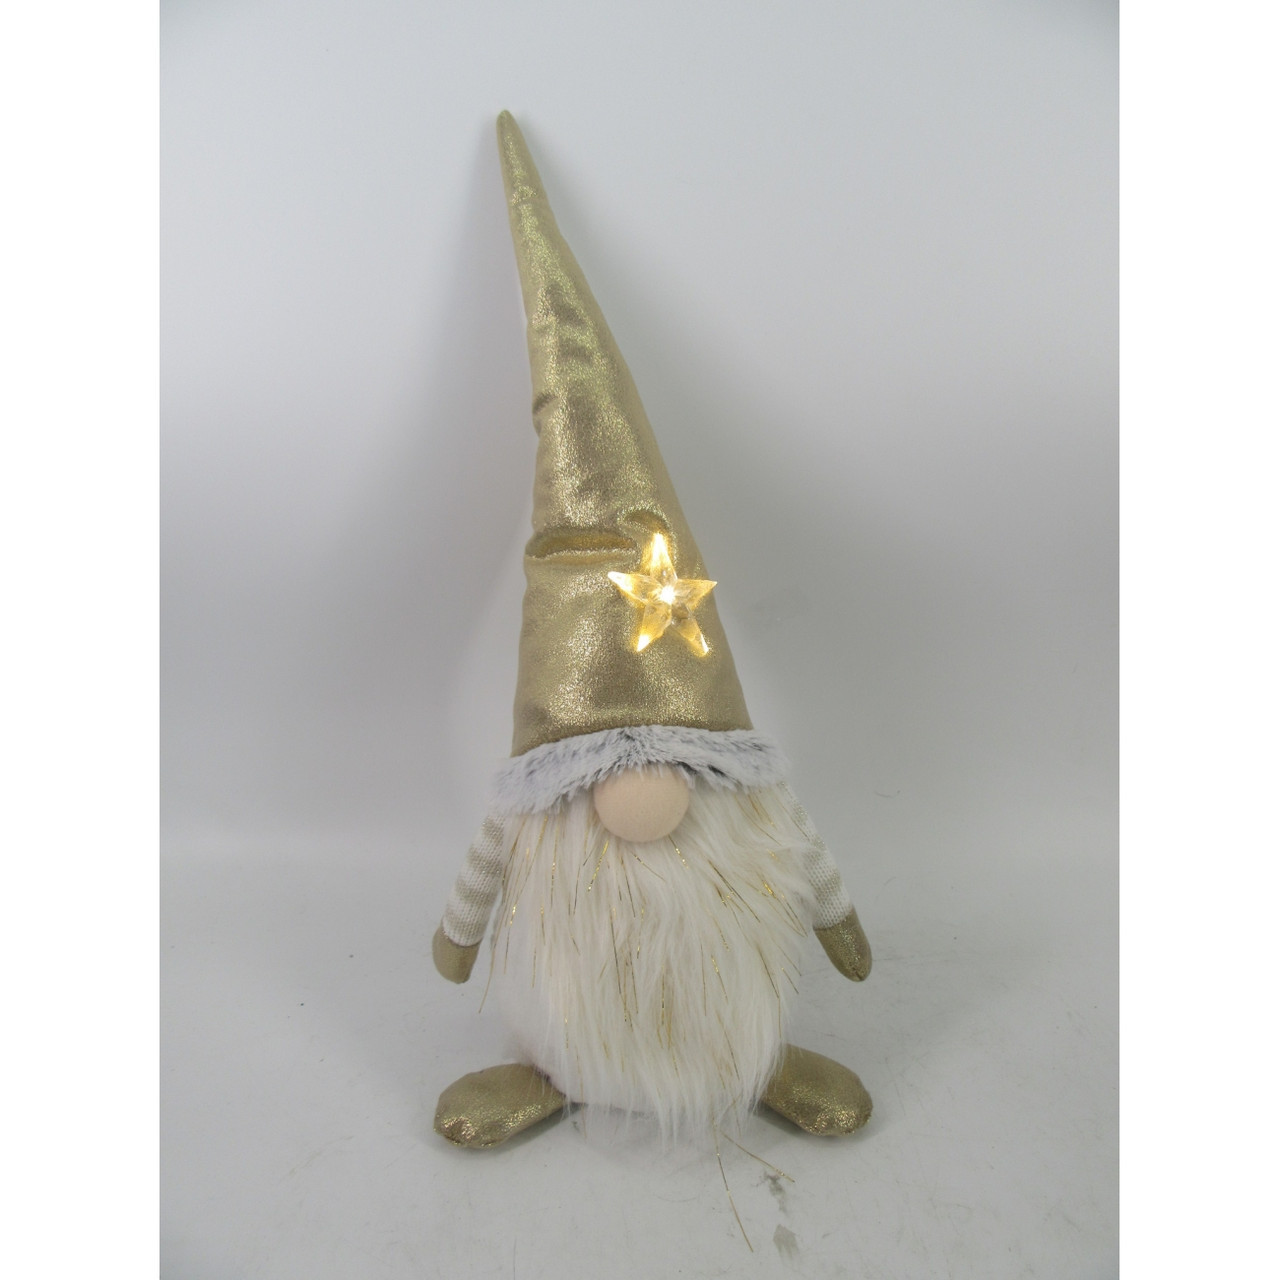 Новорічна м'яка іграшка Novogod'ko "Гном" у золотому ковпаку, 44 см, LED зірка